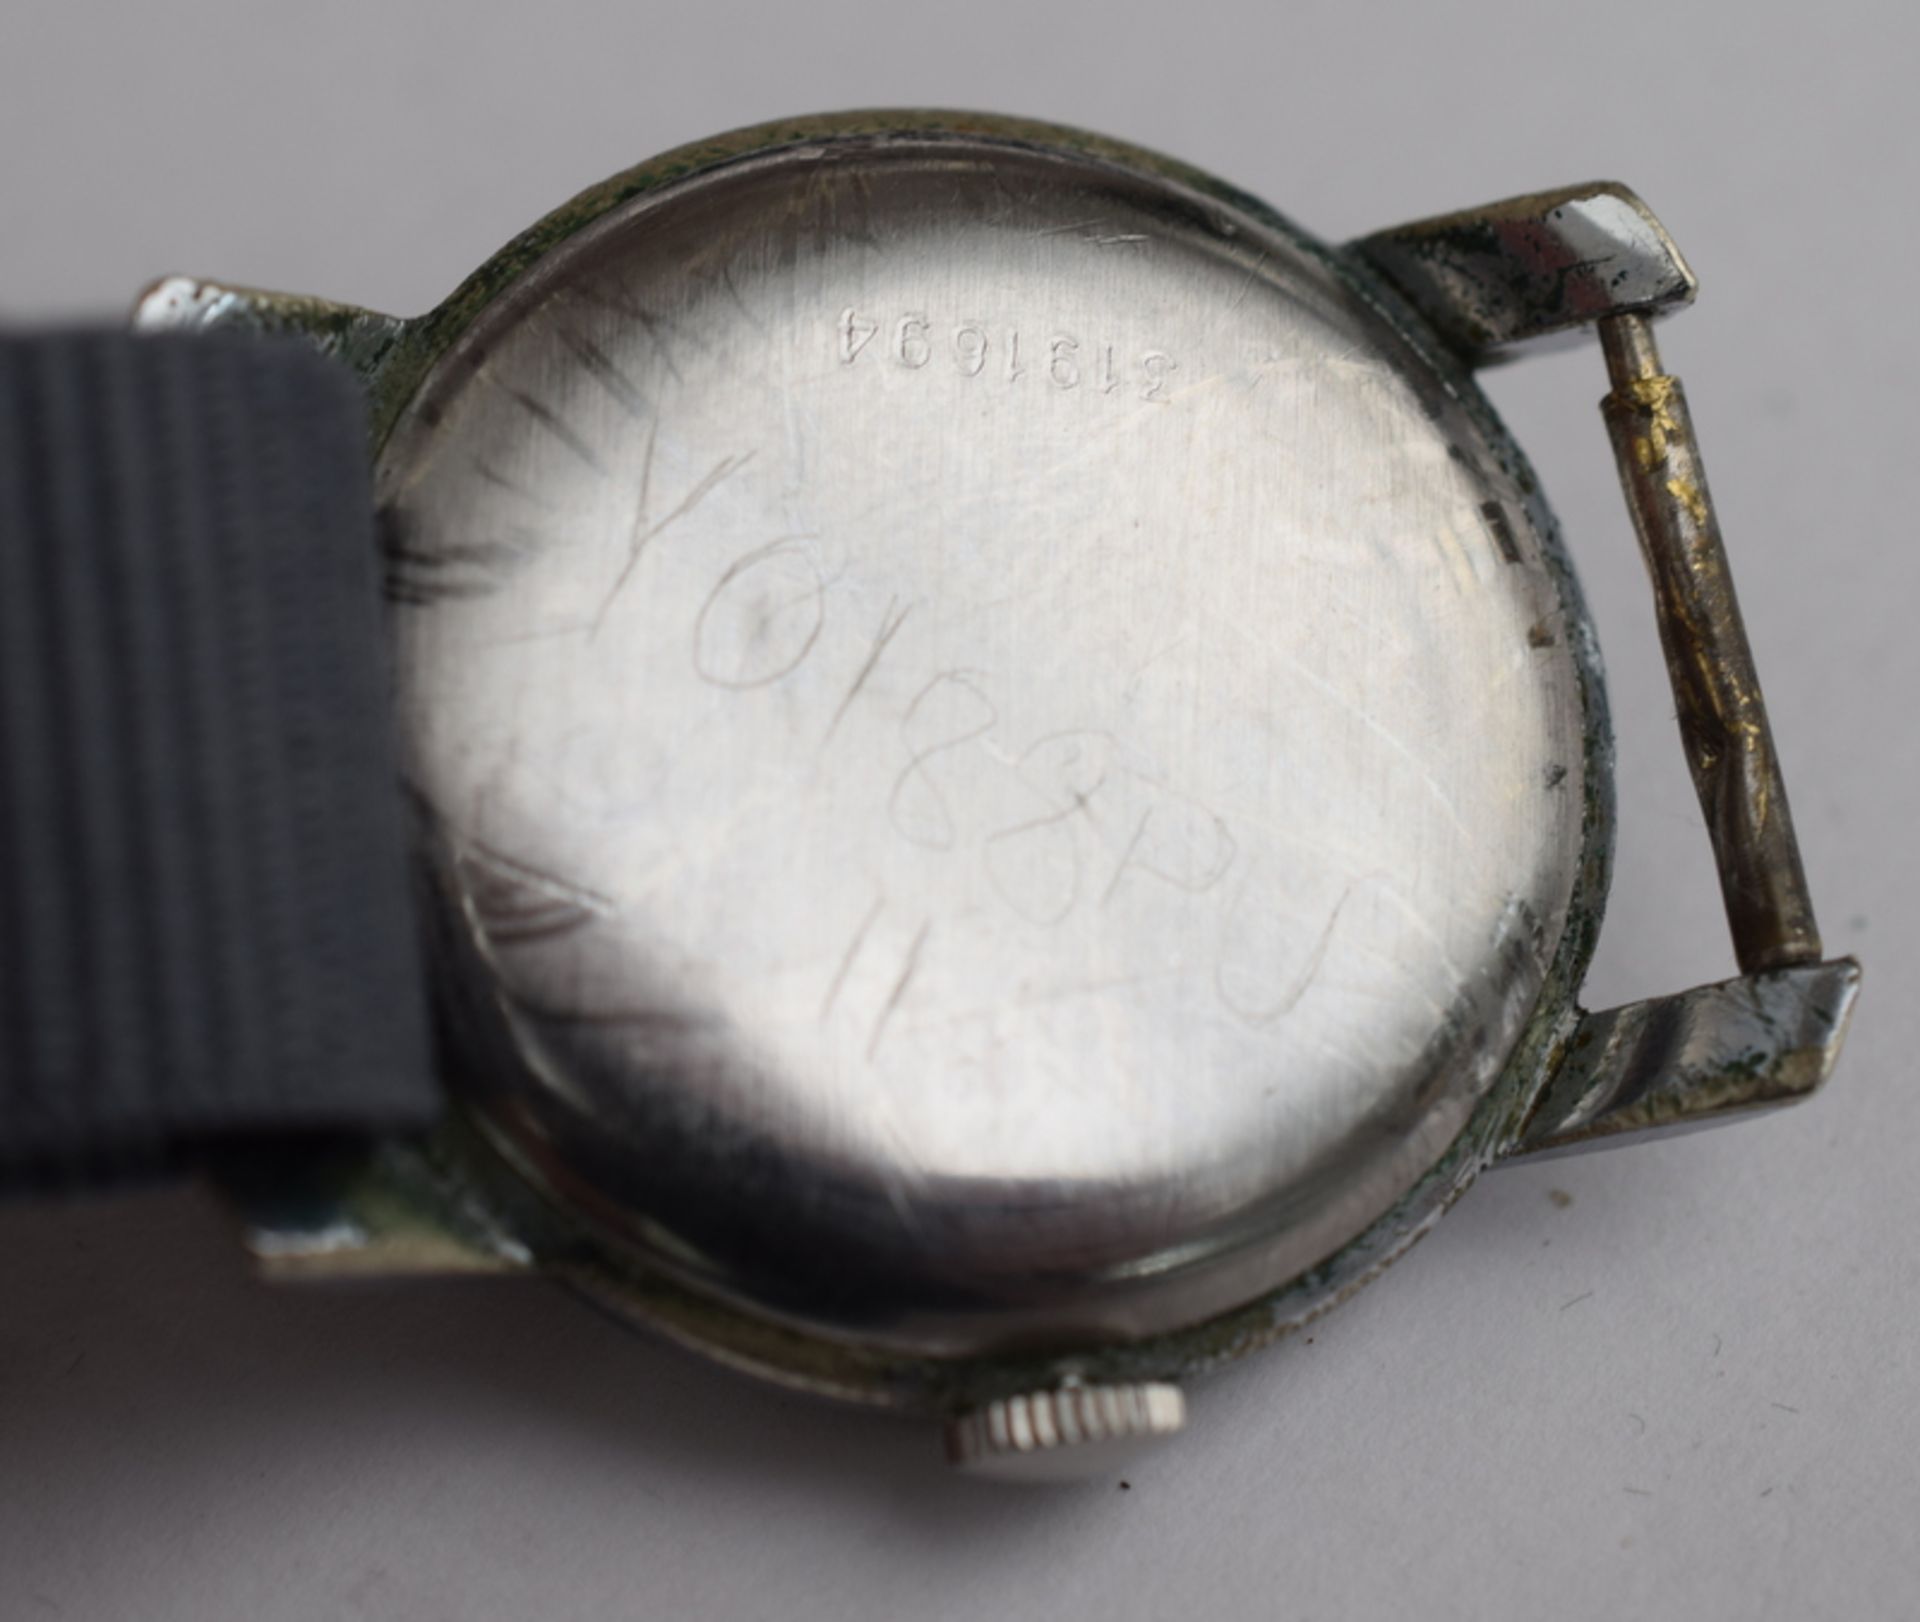 WW2 Era Eterna Dirty Dozen Style Wristwatch - Image 5 of 5